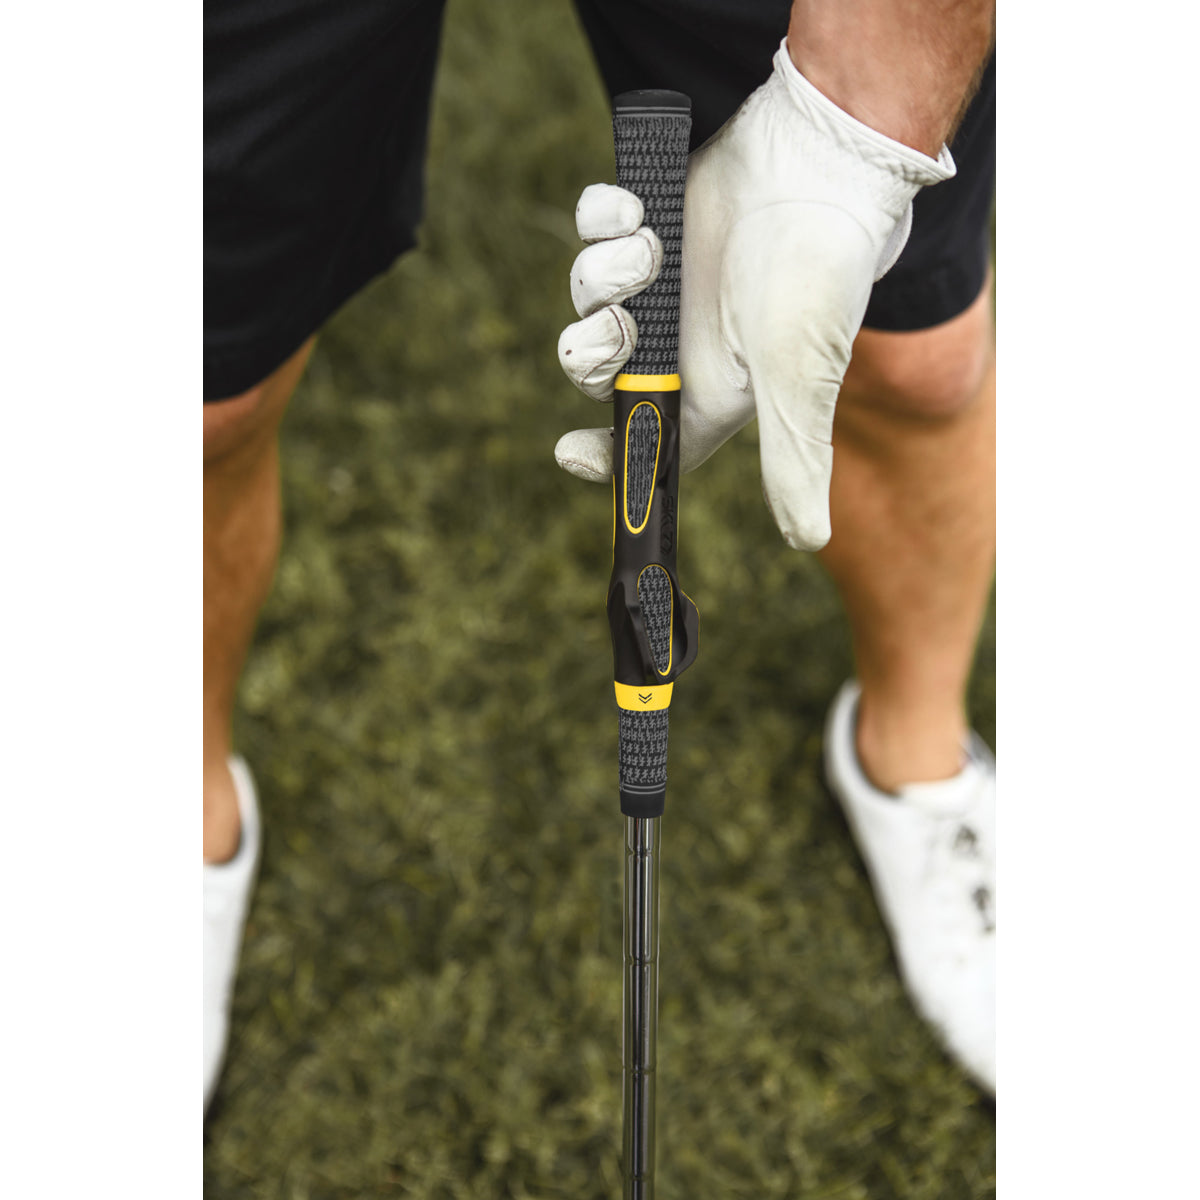 SKLZ Grip Golf Trainer - Black/Yellow SKLZ